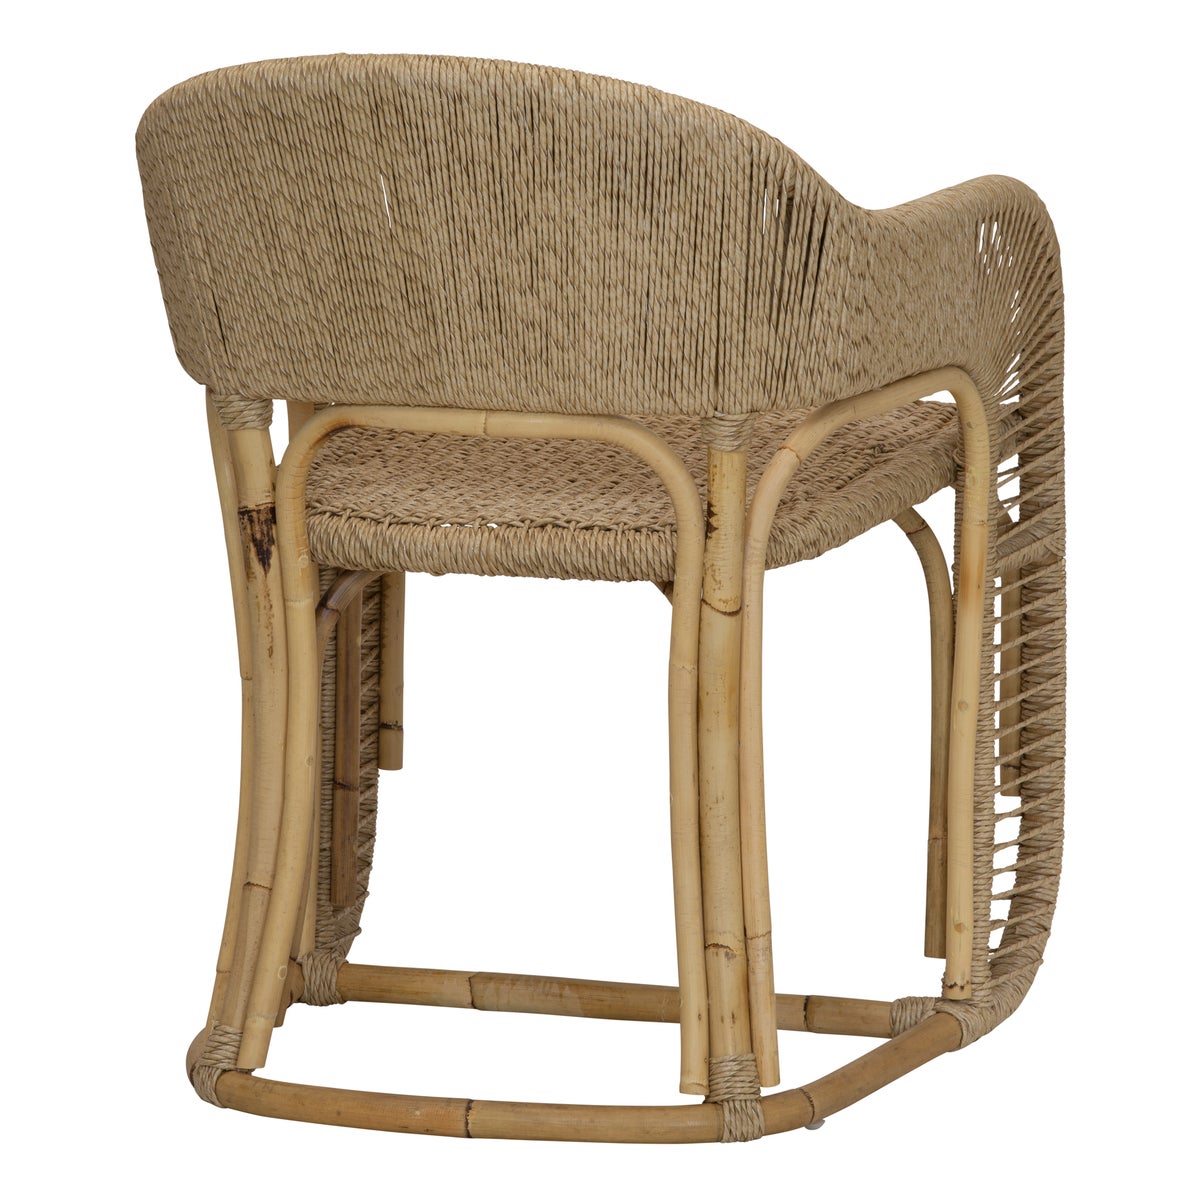 Glen Ellen Arm Chair in Natural